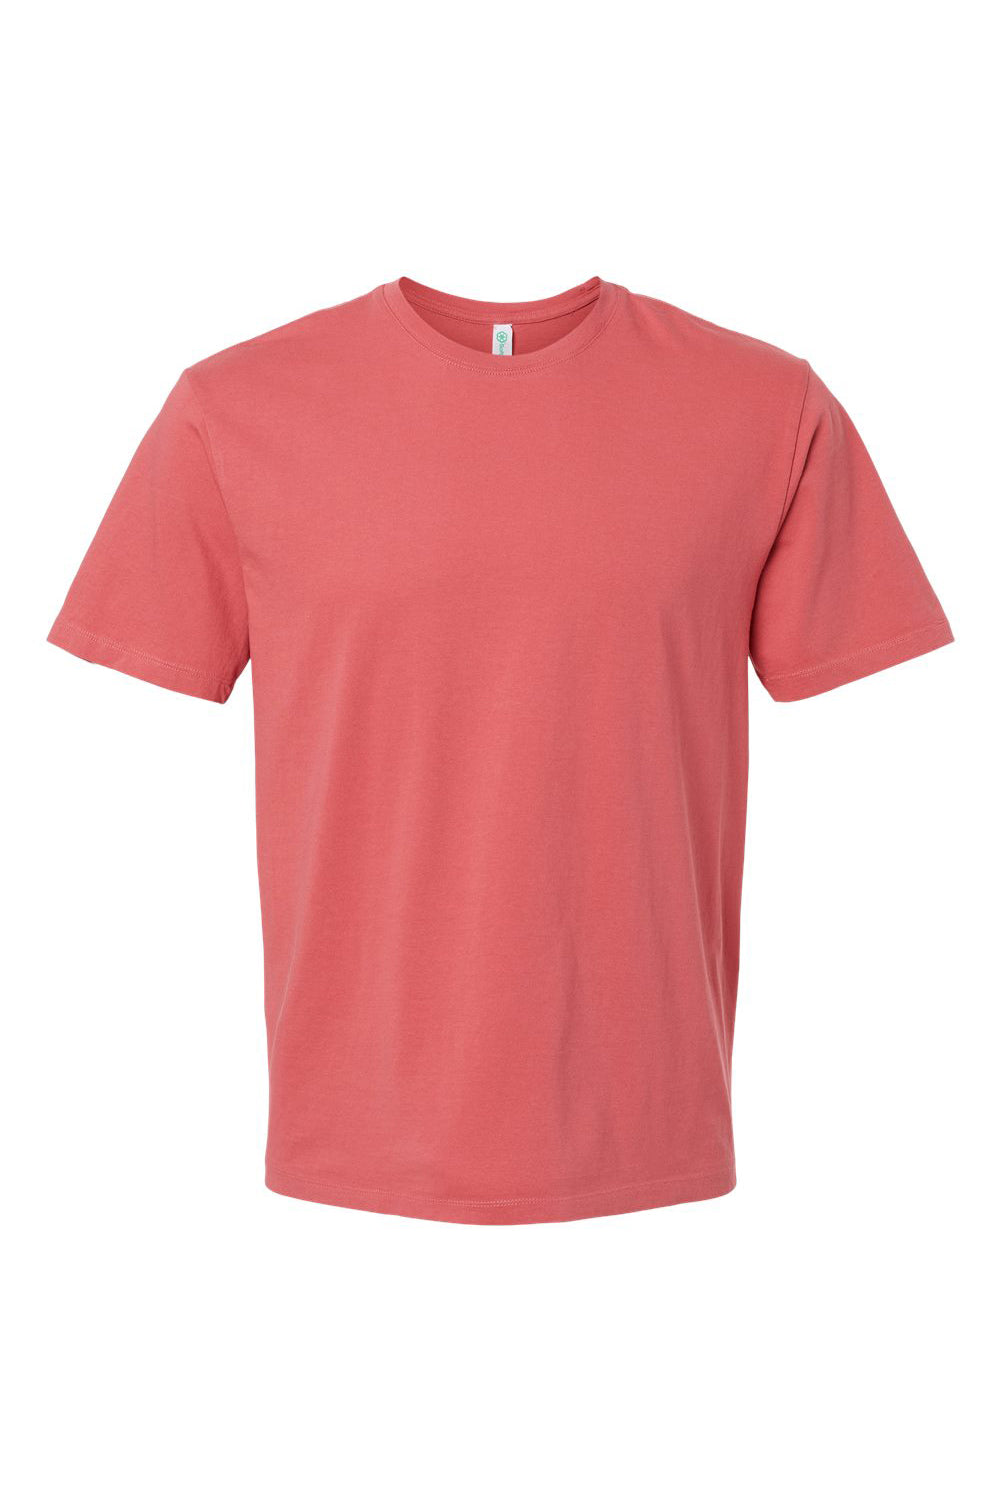 SoftShirts 400 Mens Organic Short Sleeve Crewneck T-Shirt Brick Flat Front